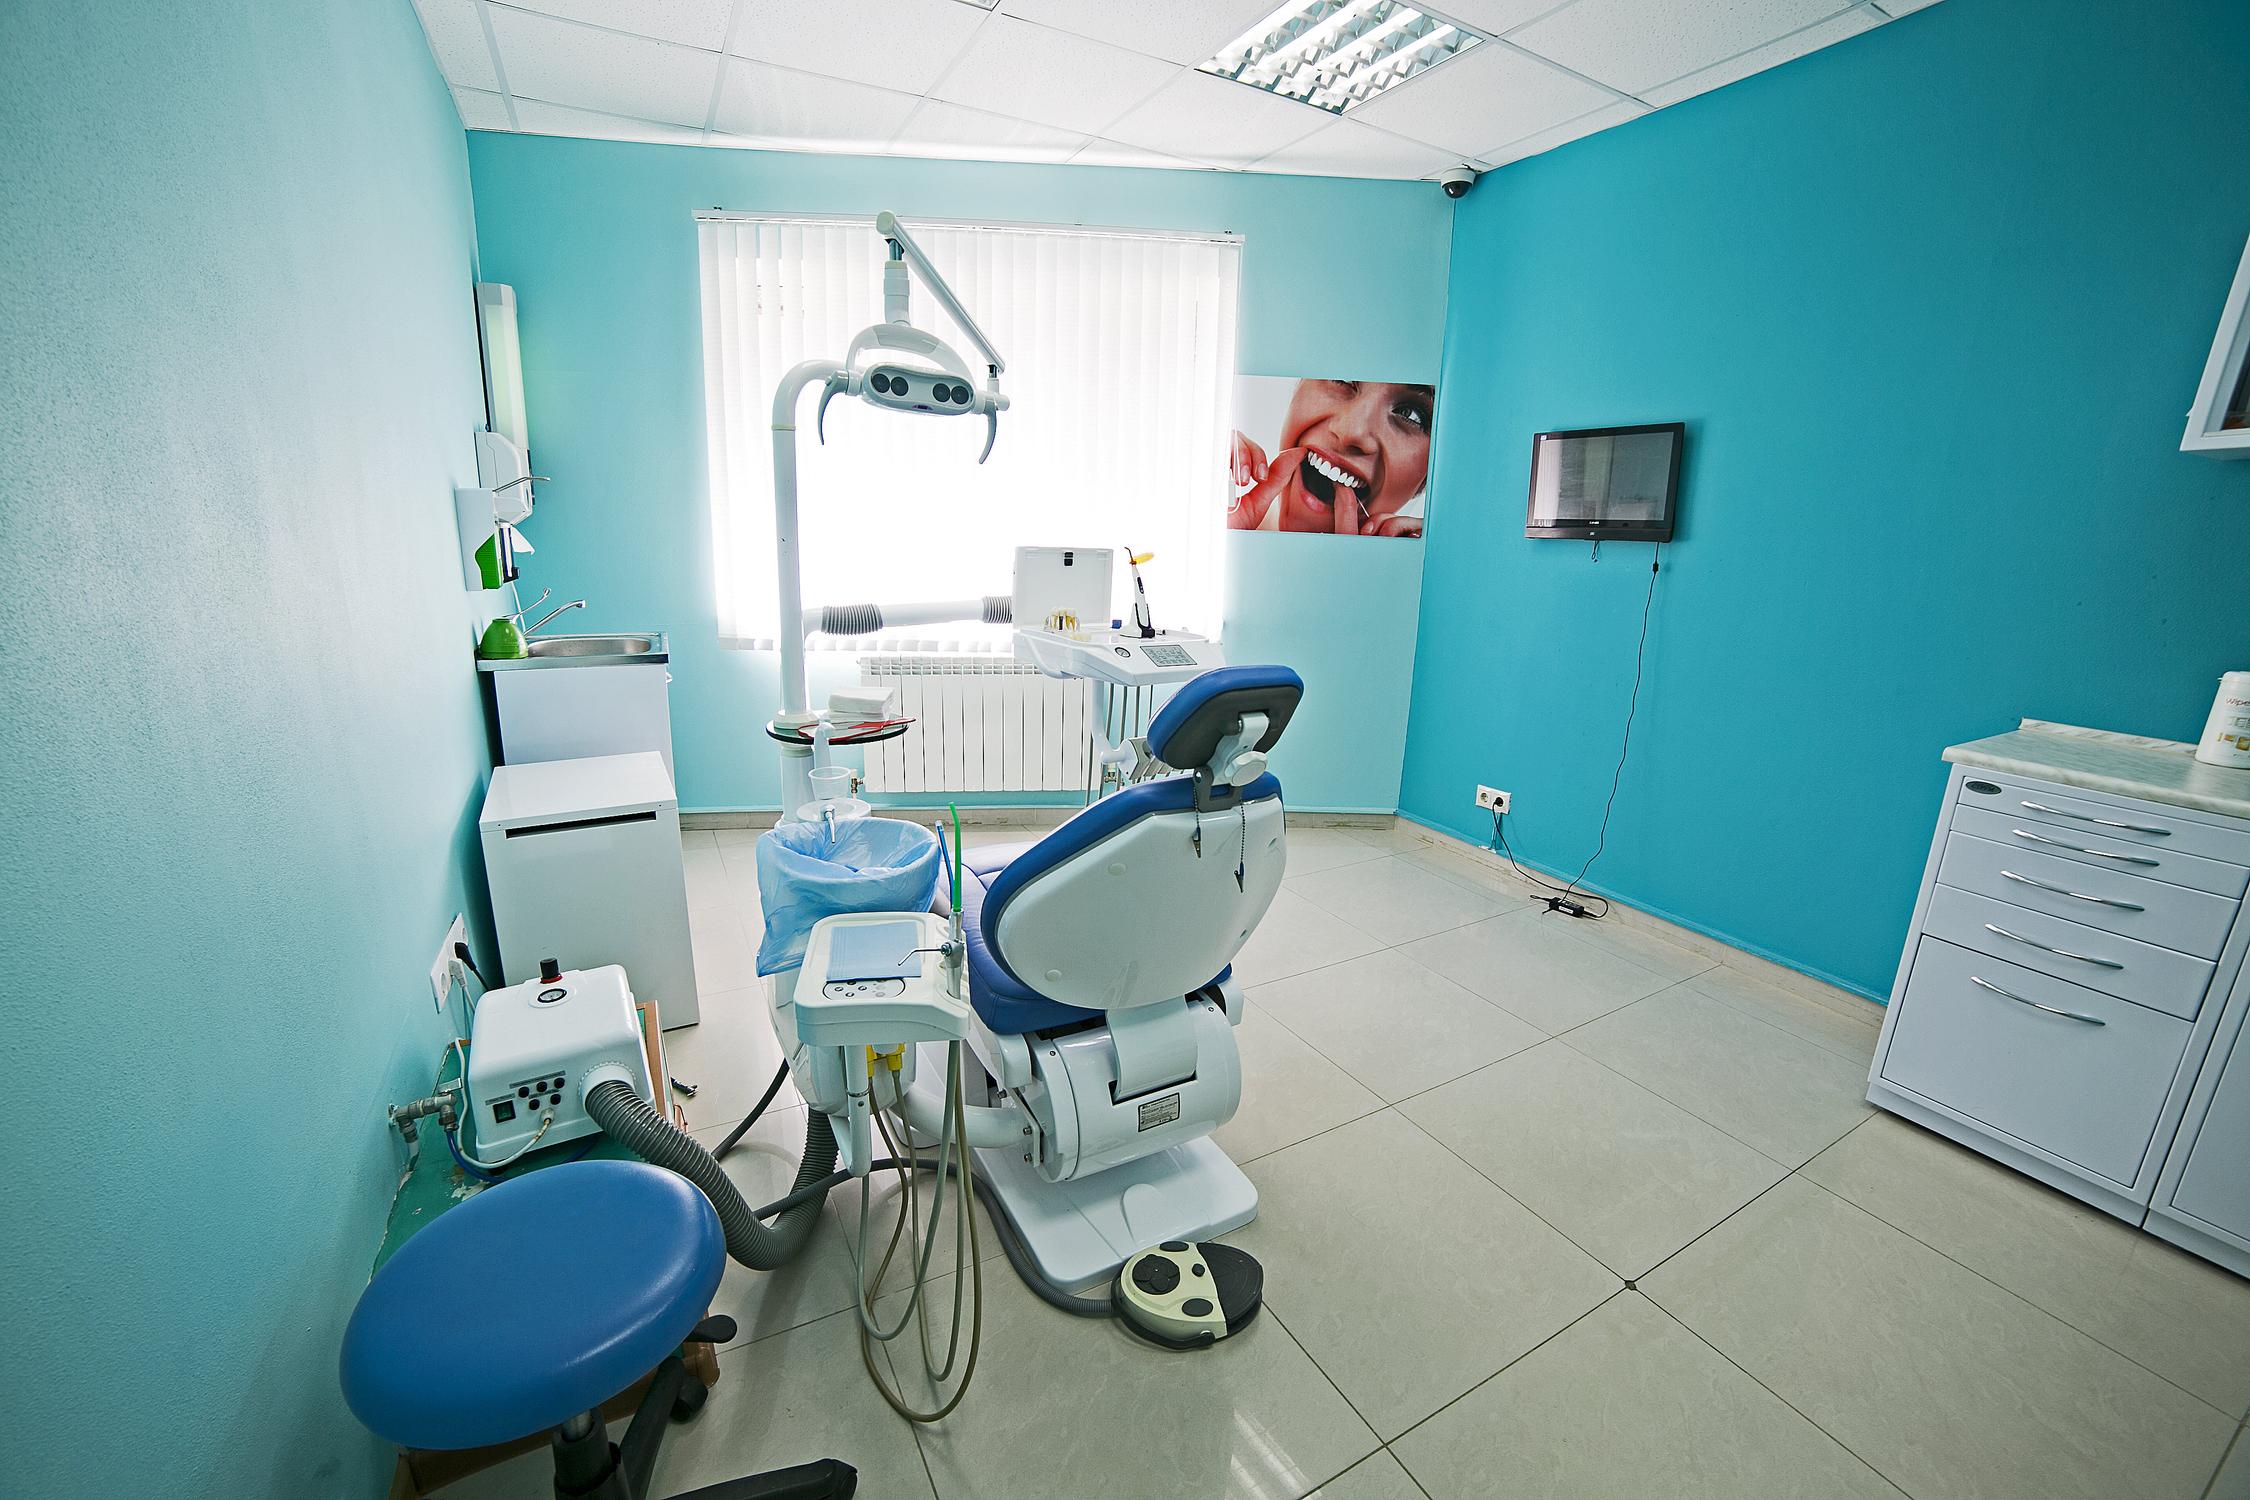 Автономная стоматология с прибылью 103 000 руб/мес